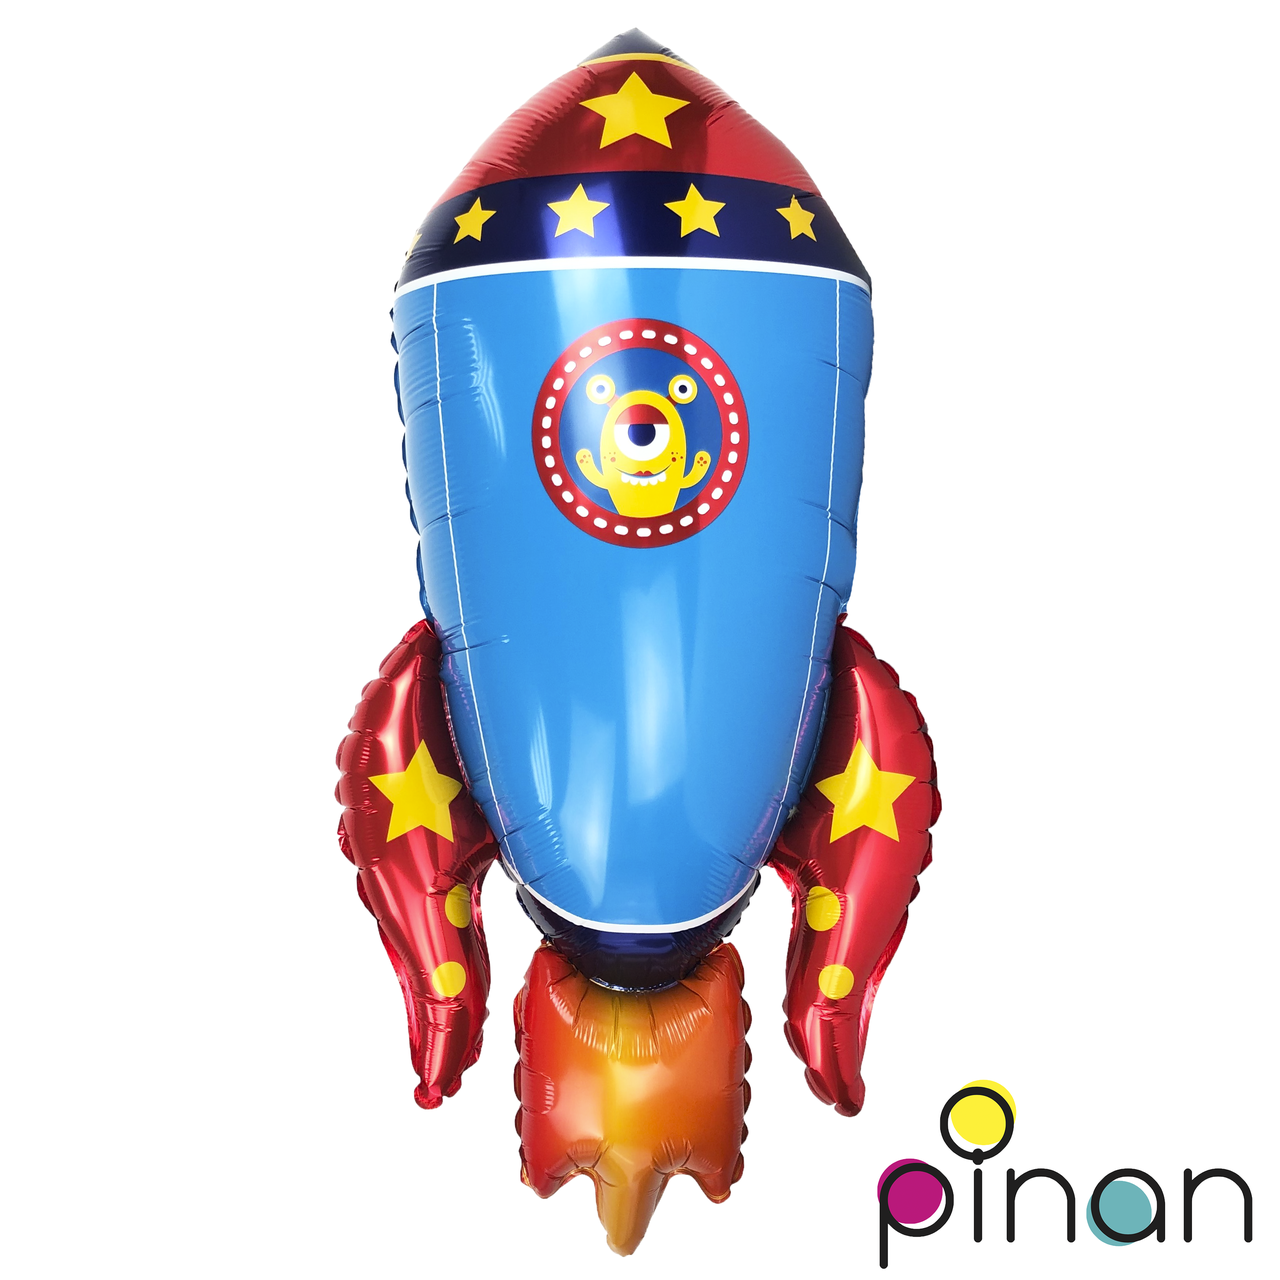 

Фольгированный шар 35’ Pinan Космос Ракета синяя, 88 см